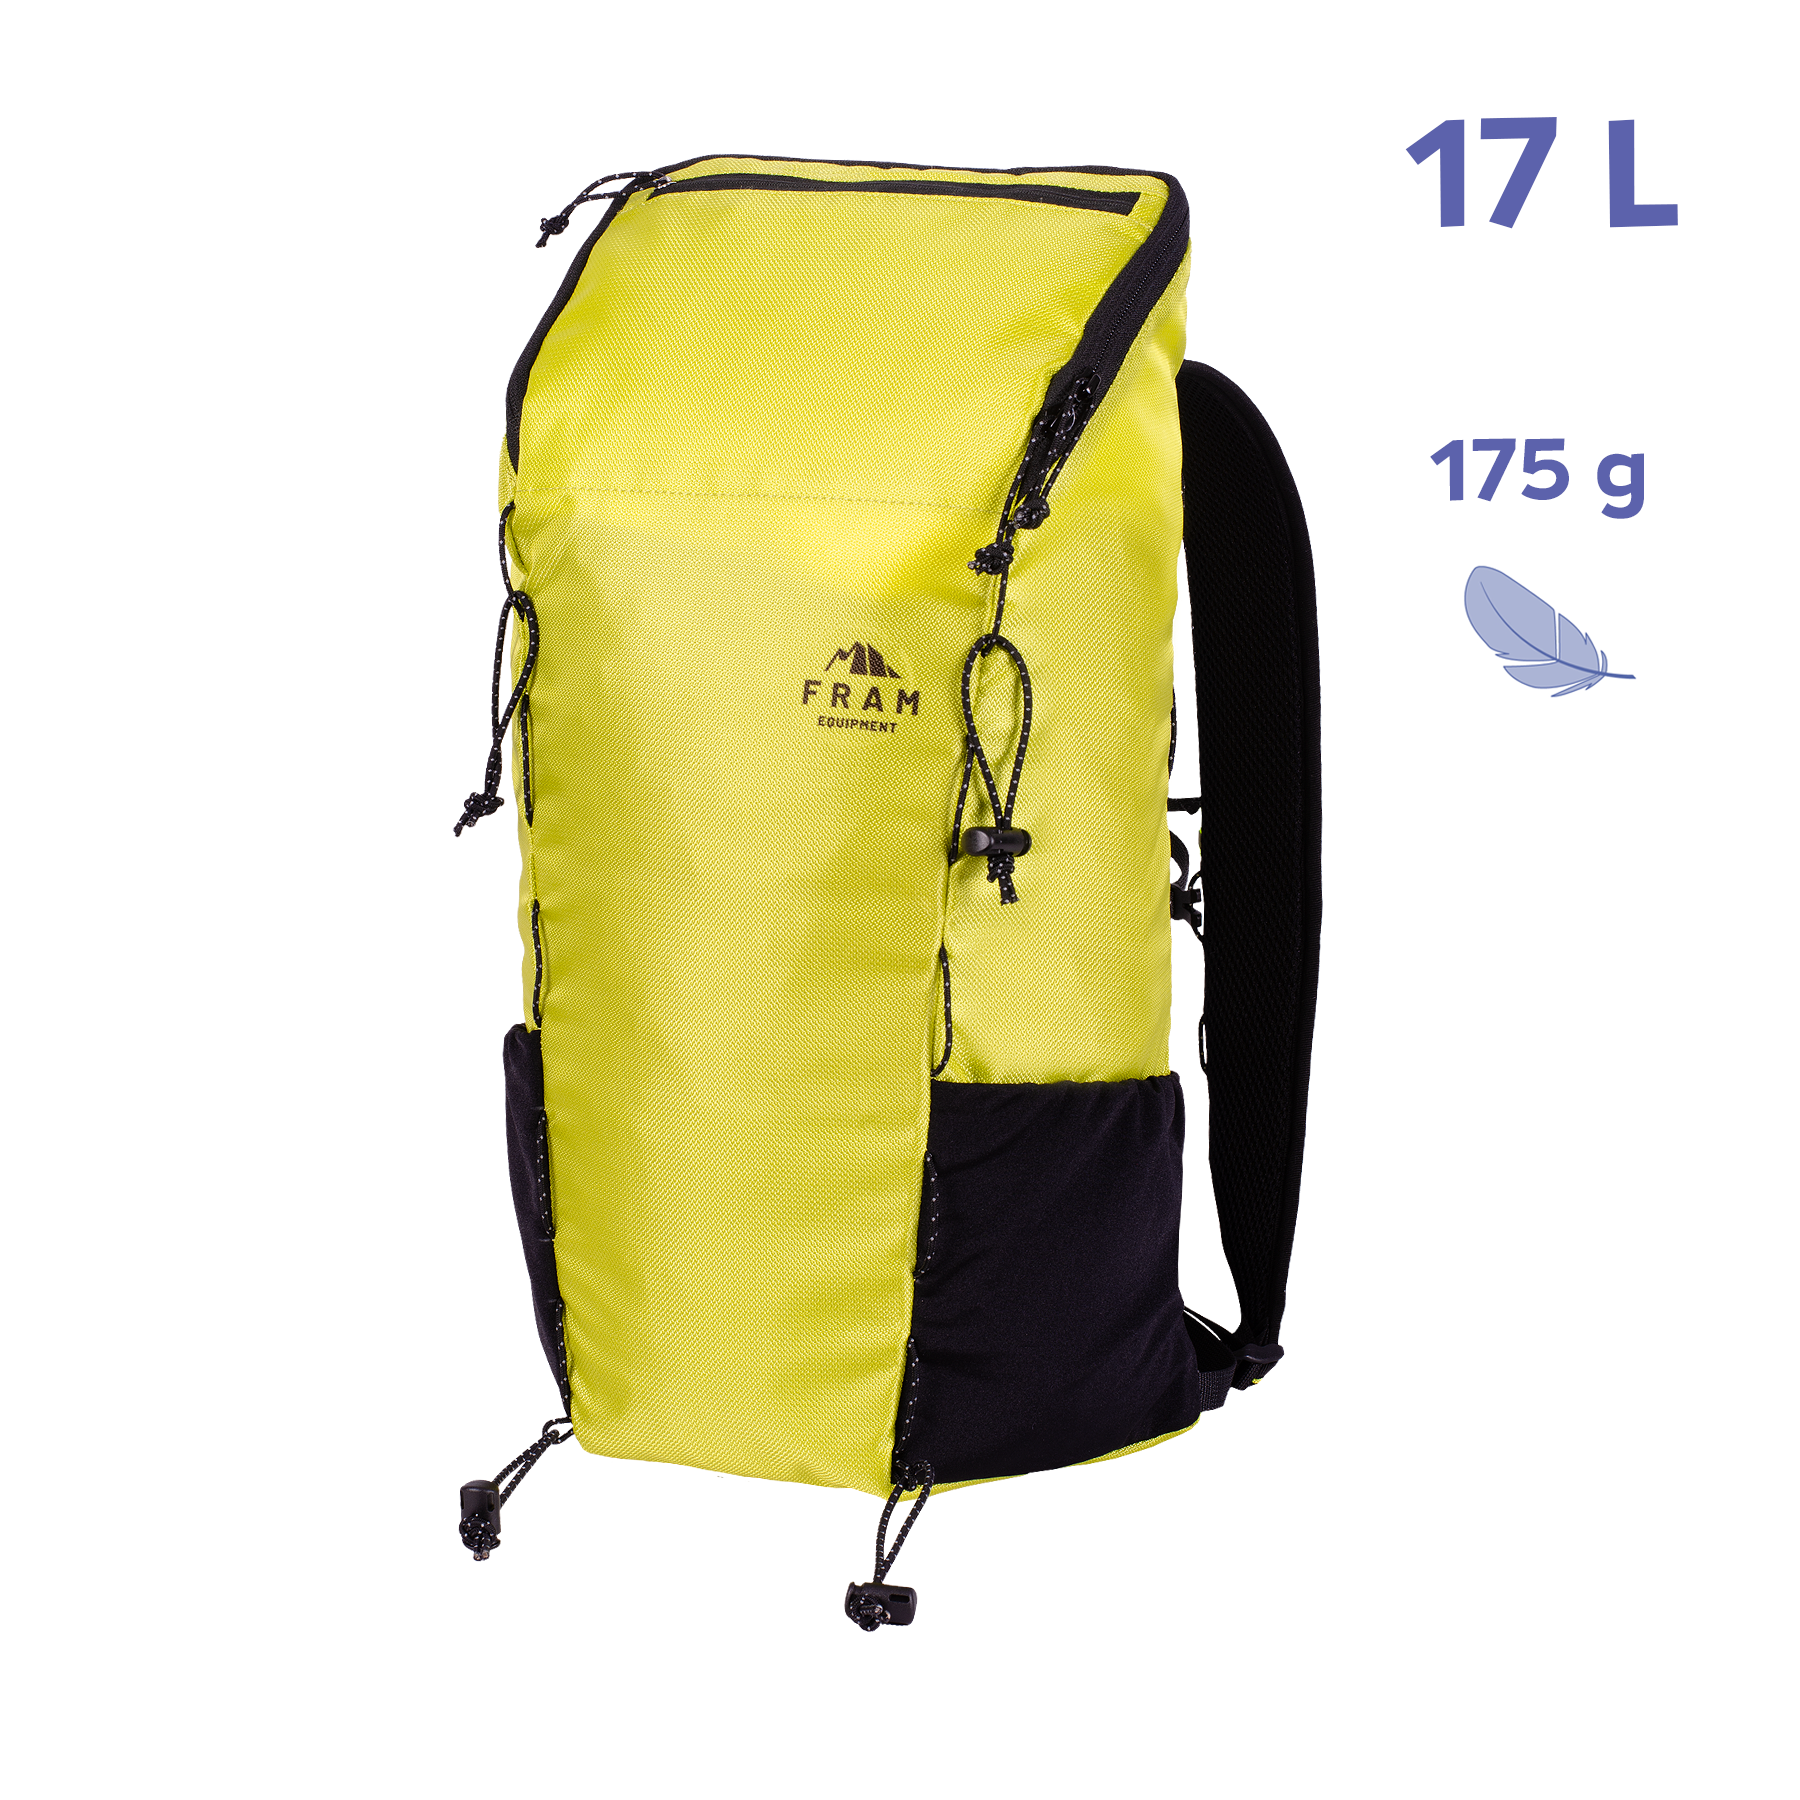 Компактный рюкзак Ararat 17L лимонный фото 1